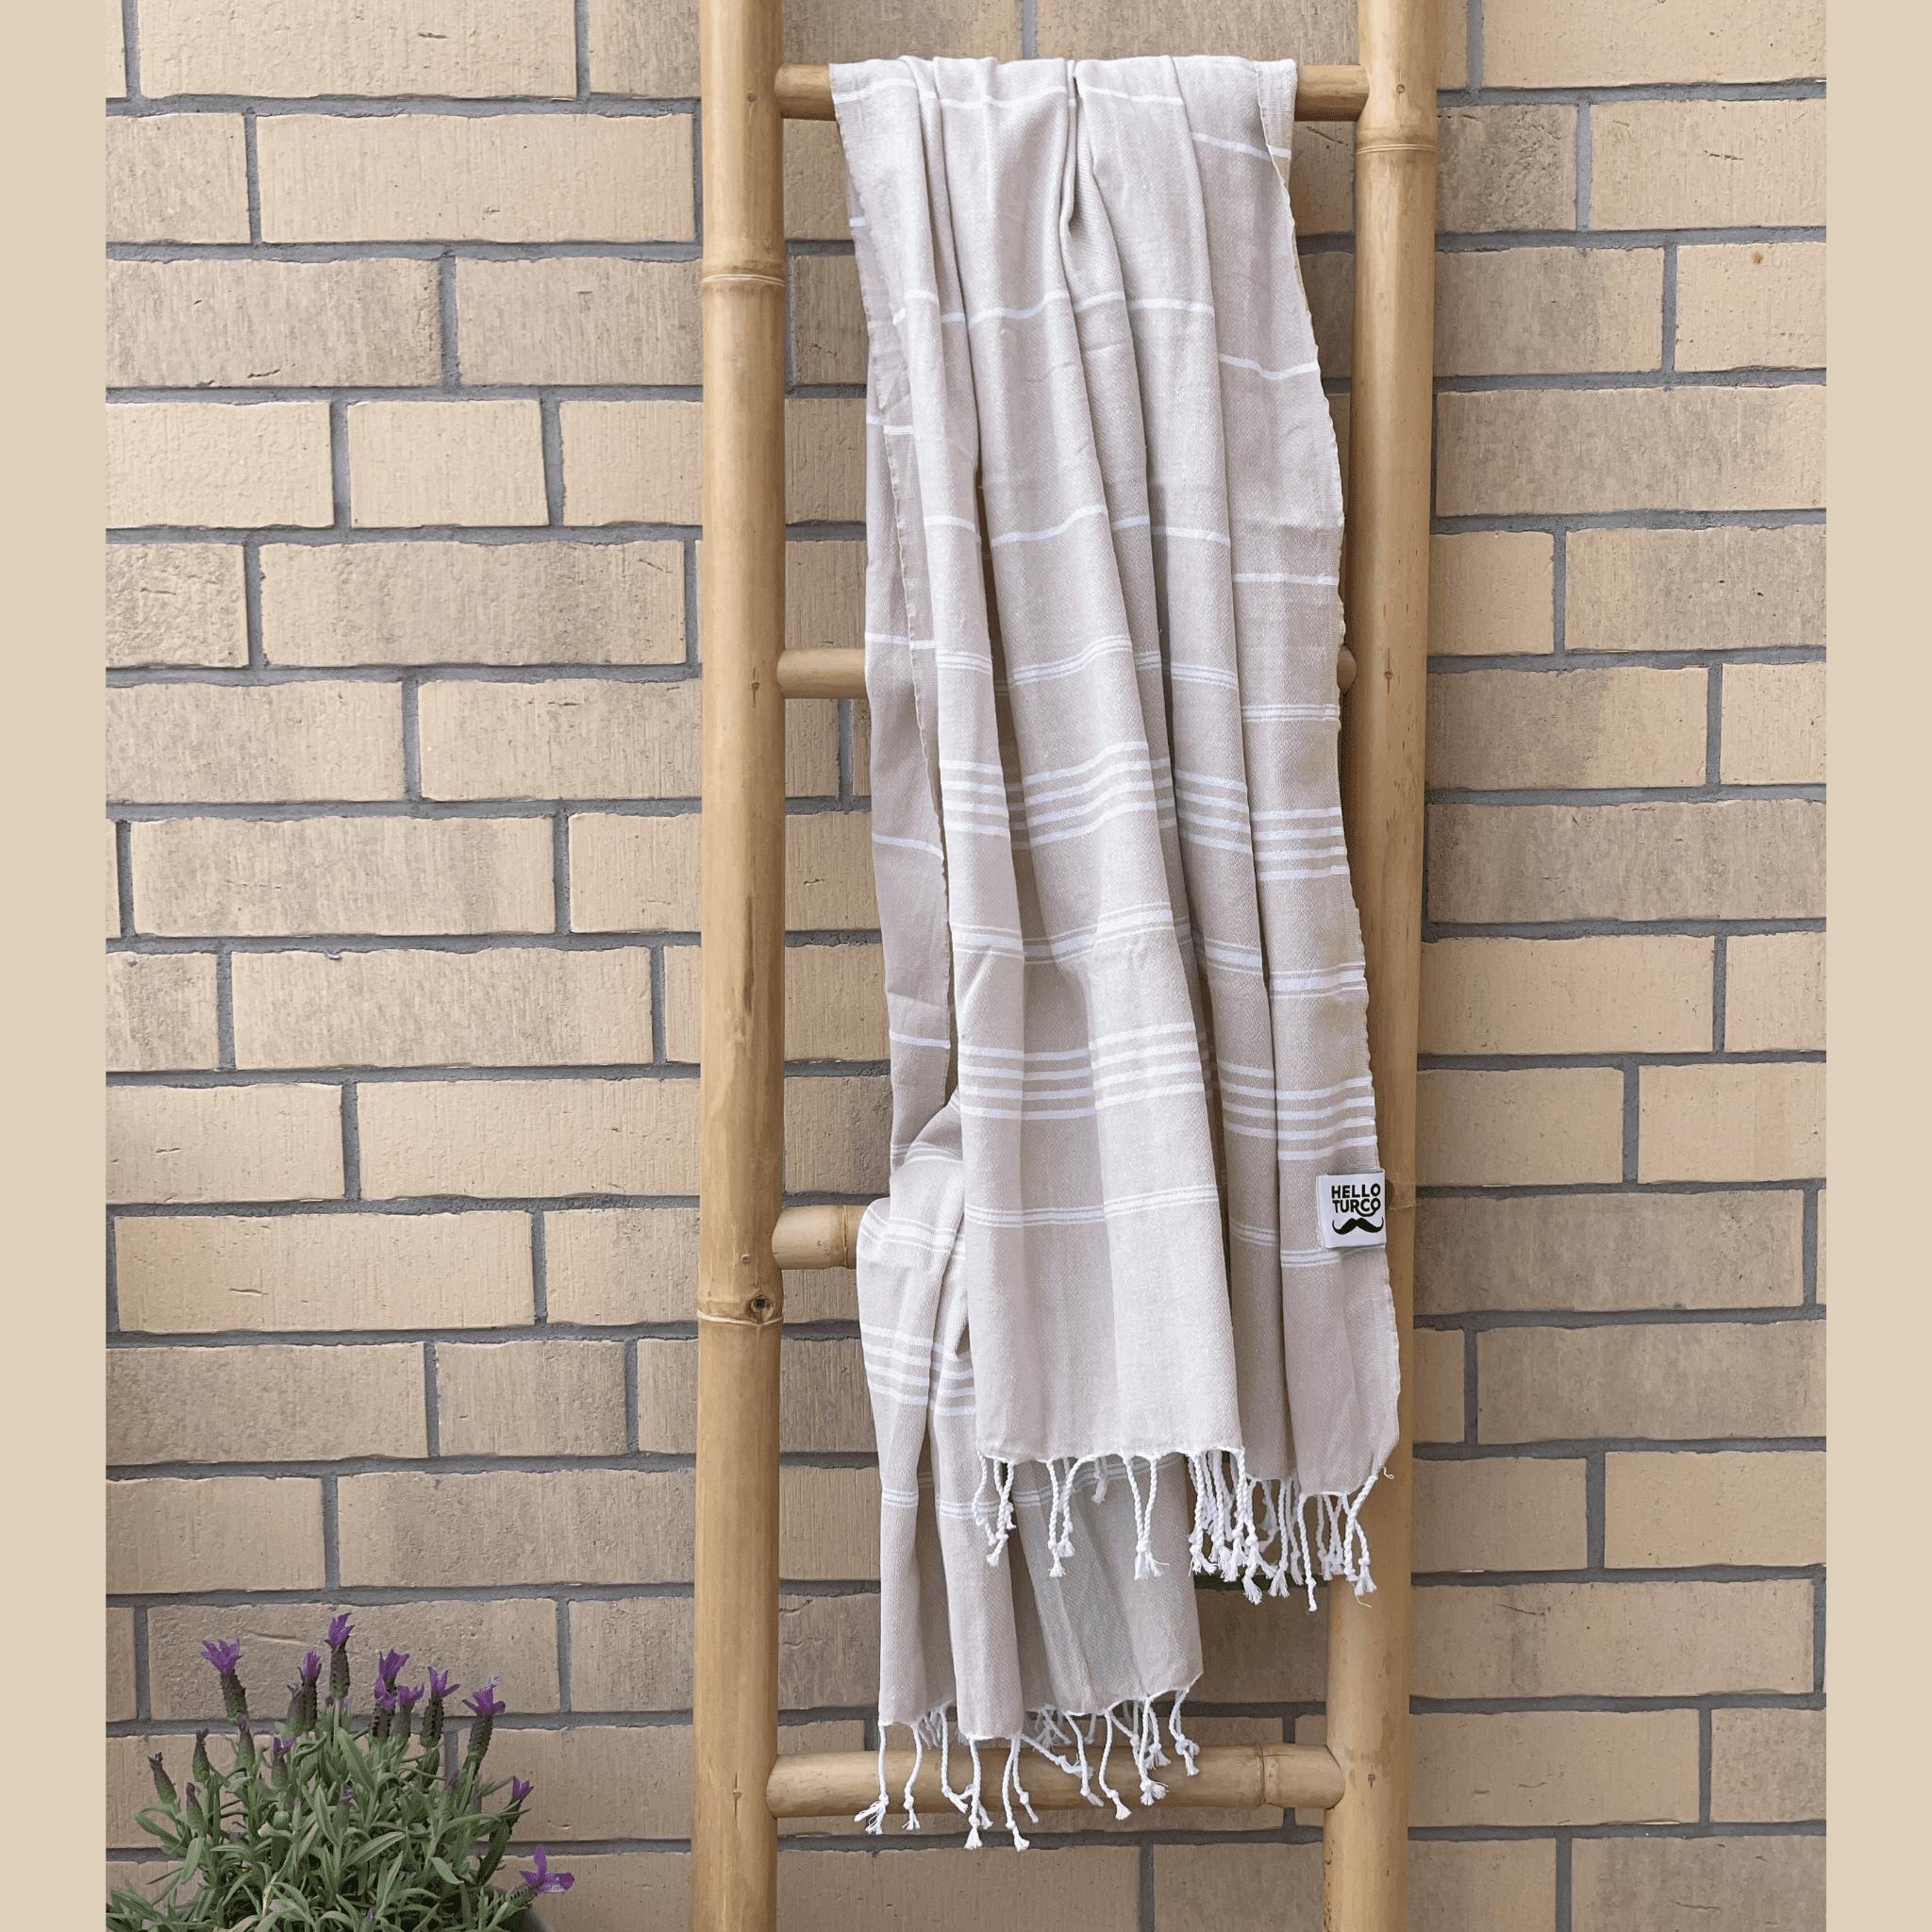 Hamam handduk, beige med vit rand, 180 x 100 cm